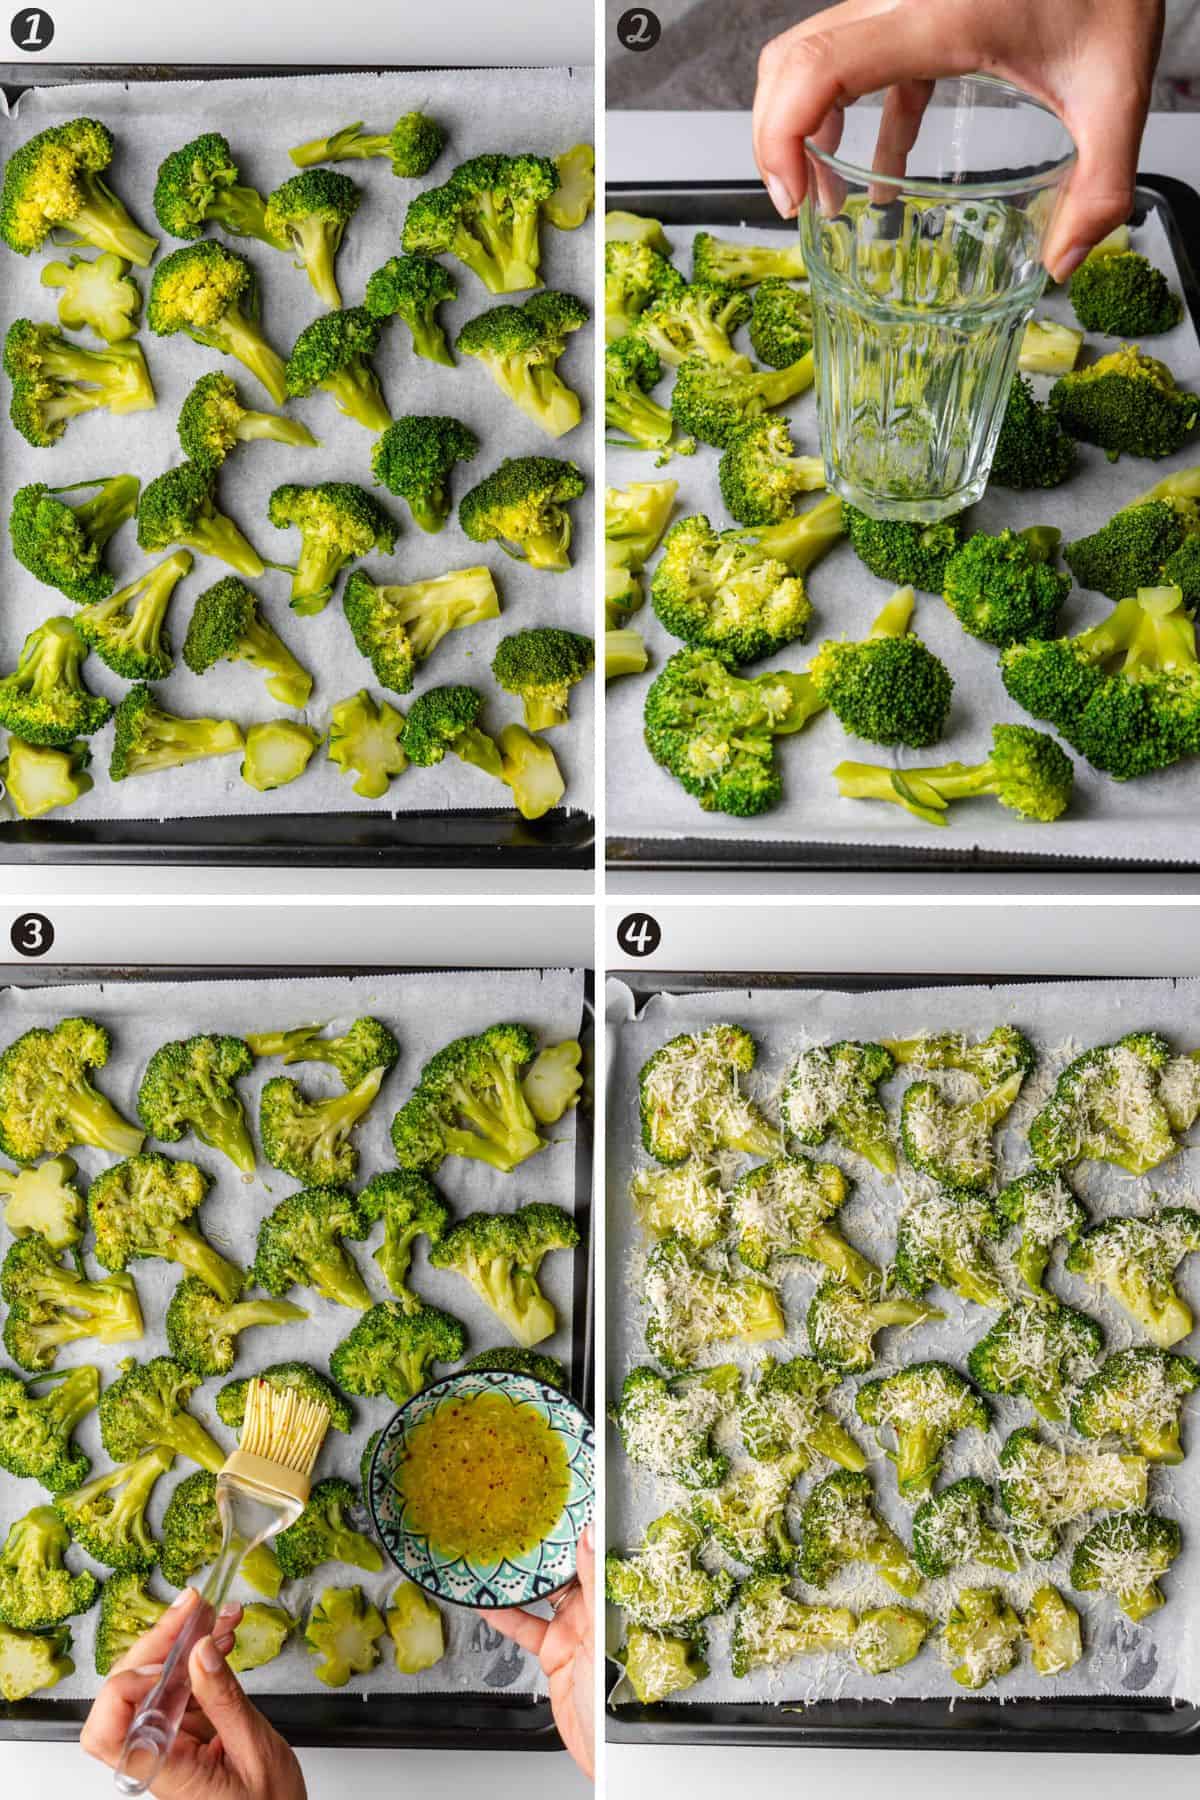 Steps on how to make smashed broccoli